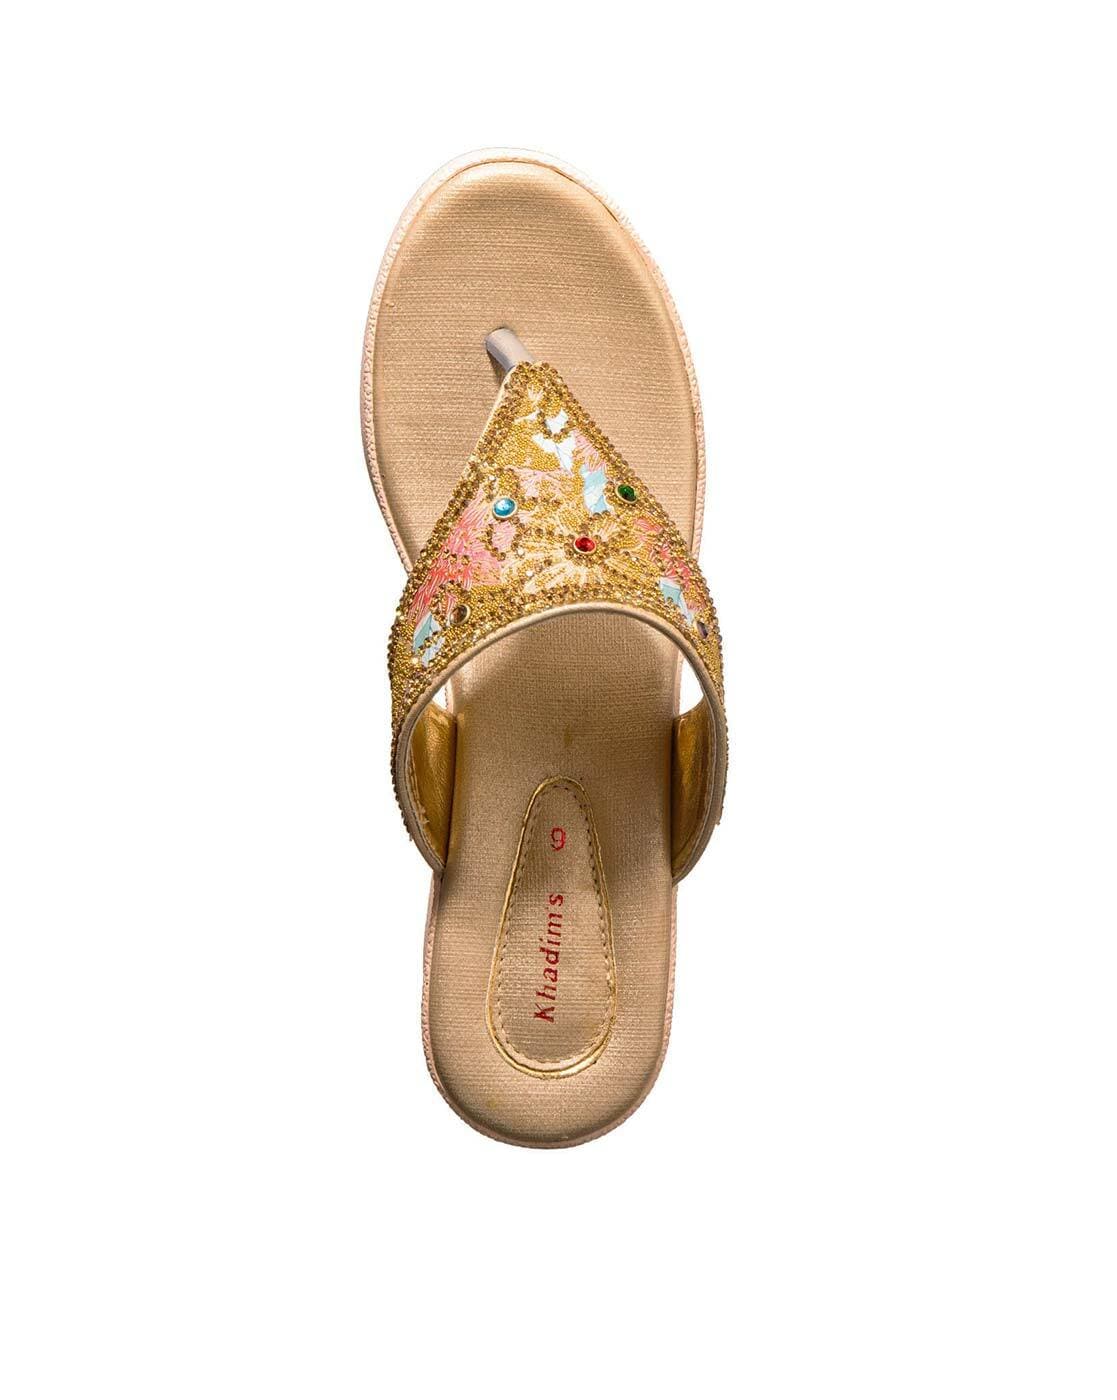 KHADIM Grey High Heel Block Slip On Ethnic Sandal for Women (5720332)